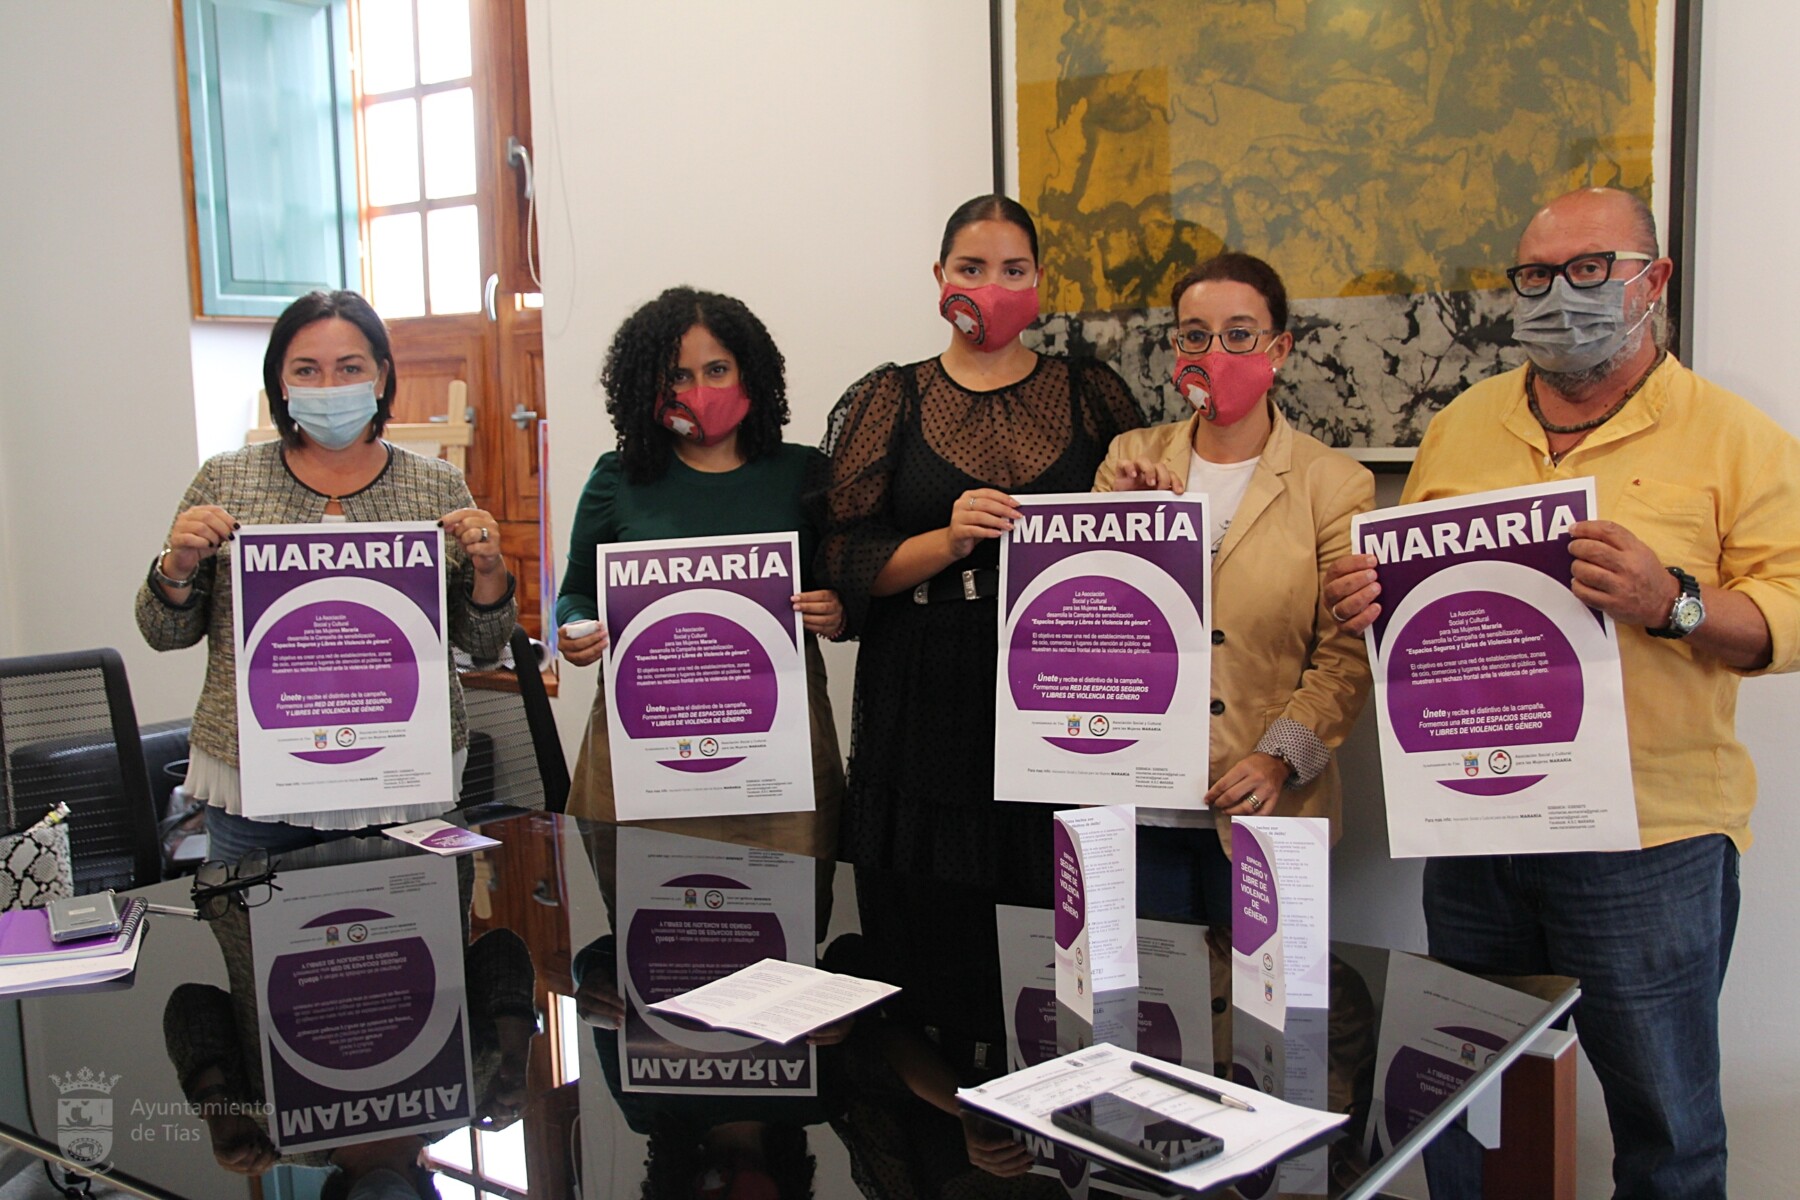 El Ayuntamiento de Tías se suma a la campaña de Mararía para facilitar espacios seguros para la mujer